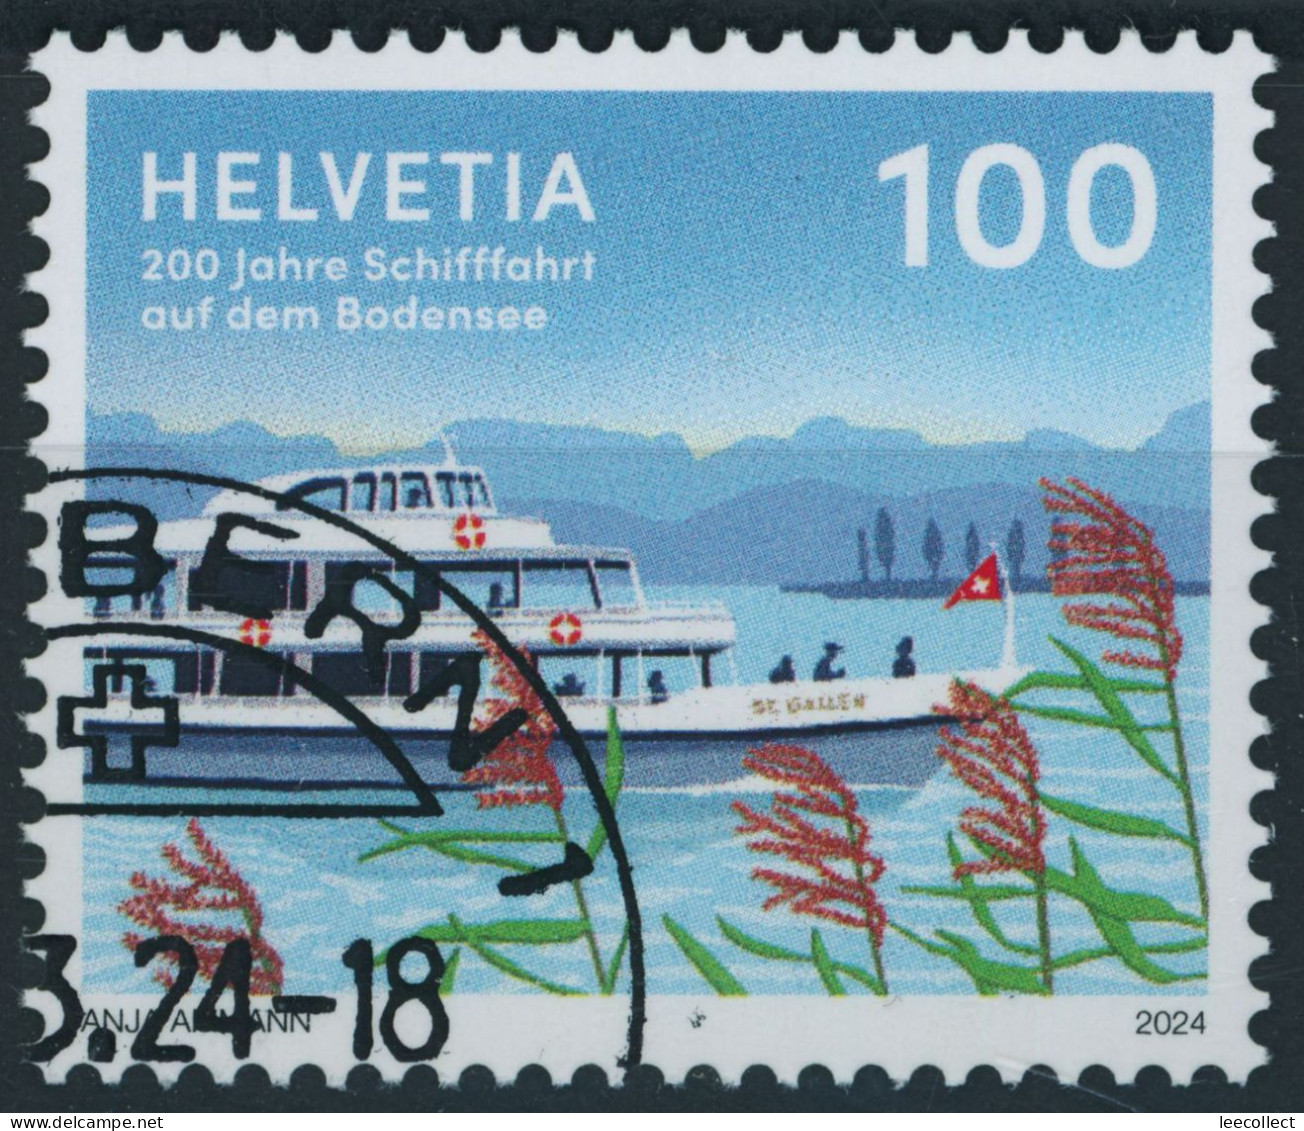 Suisse - 2024 - Schifffahrt Bodensee - Ersttag Stempel ET - Used Stamps